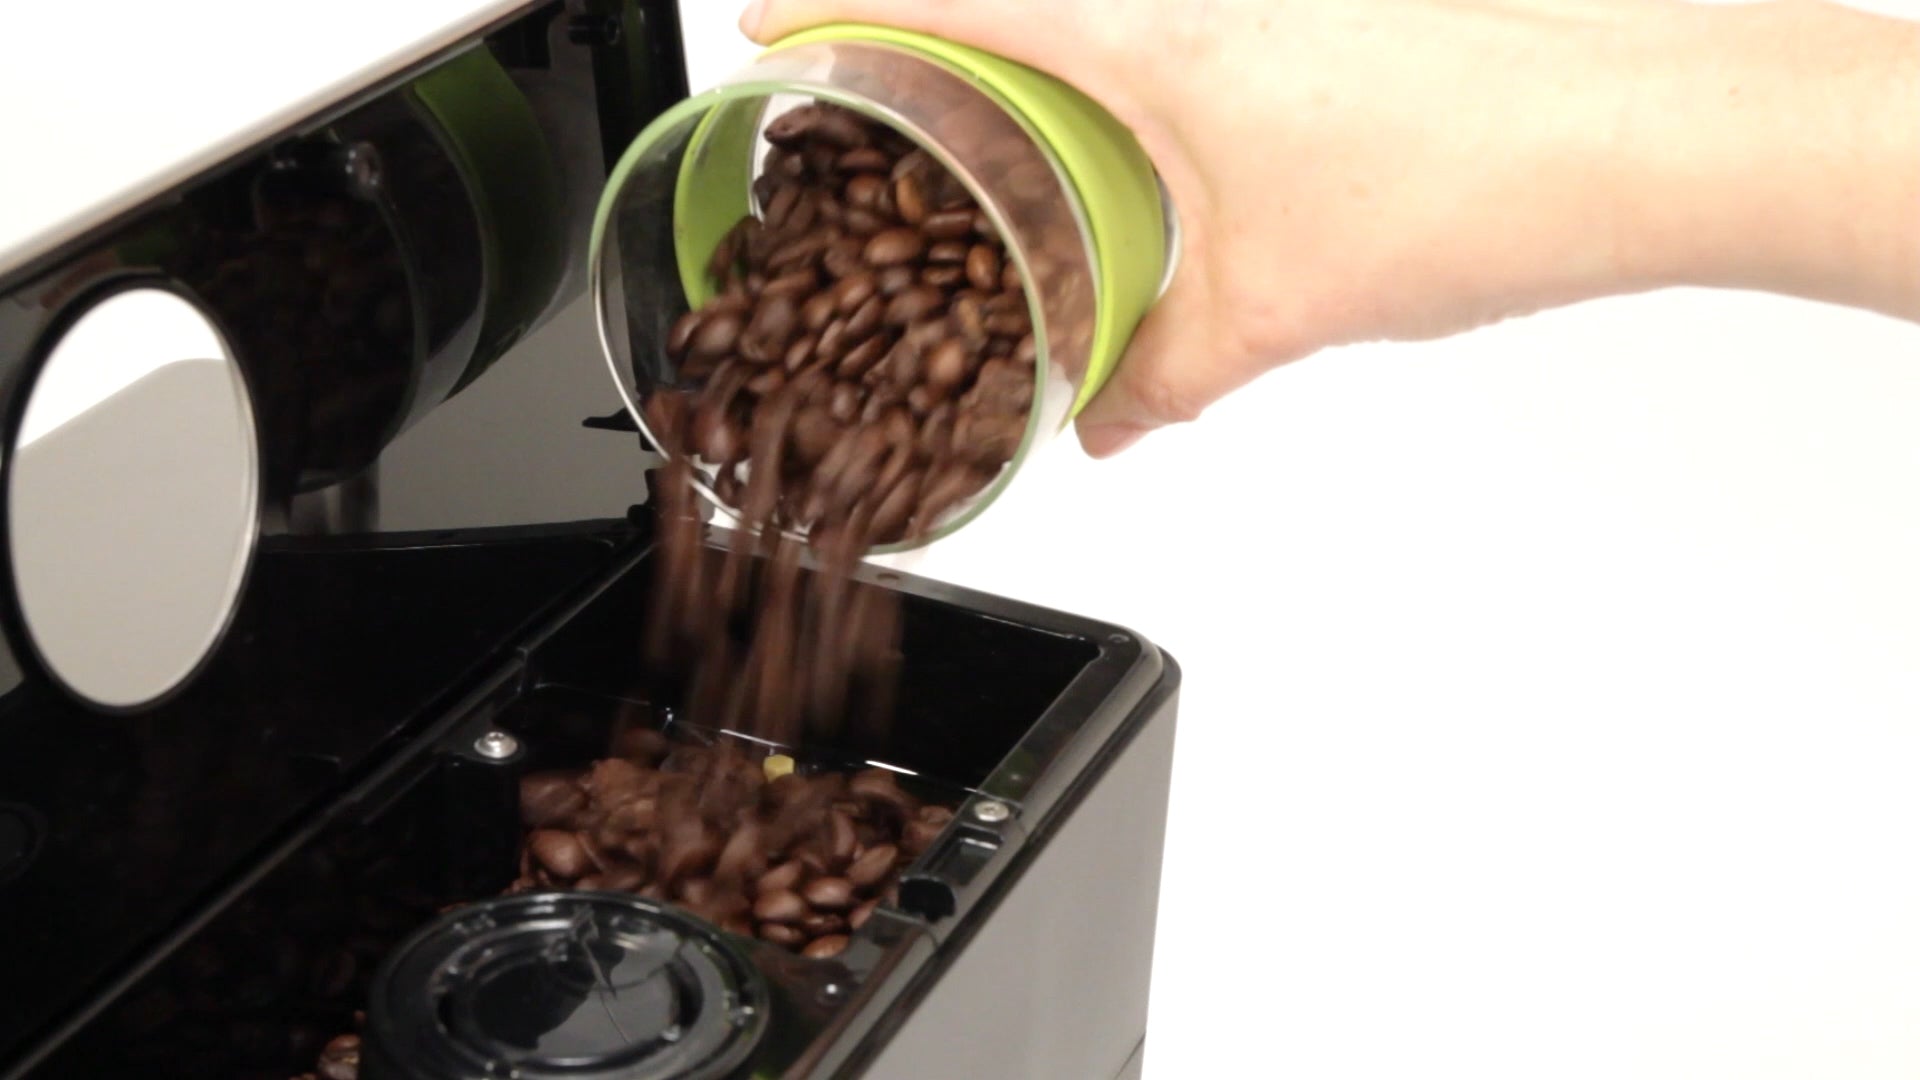 Gaggia Anima Prestige Super-Automatic Espresso Machine – Whole Latte Love